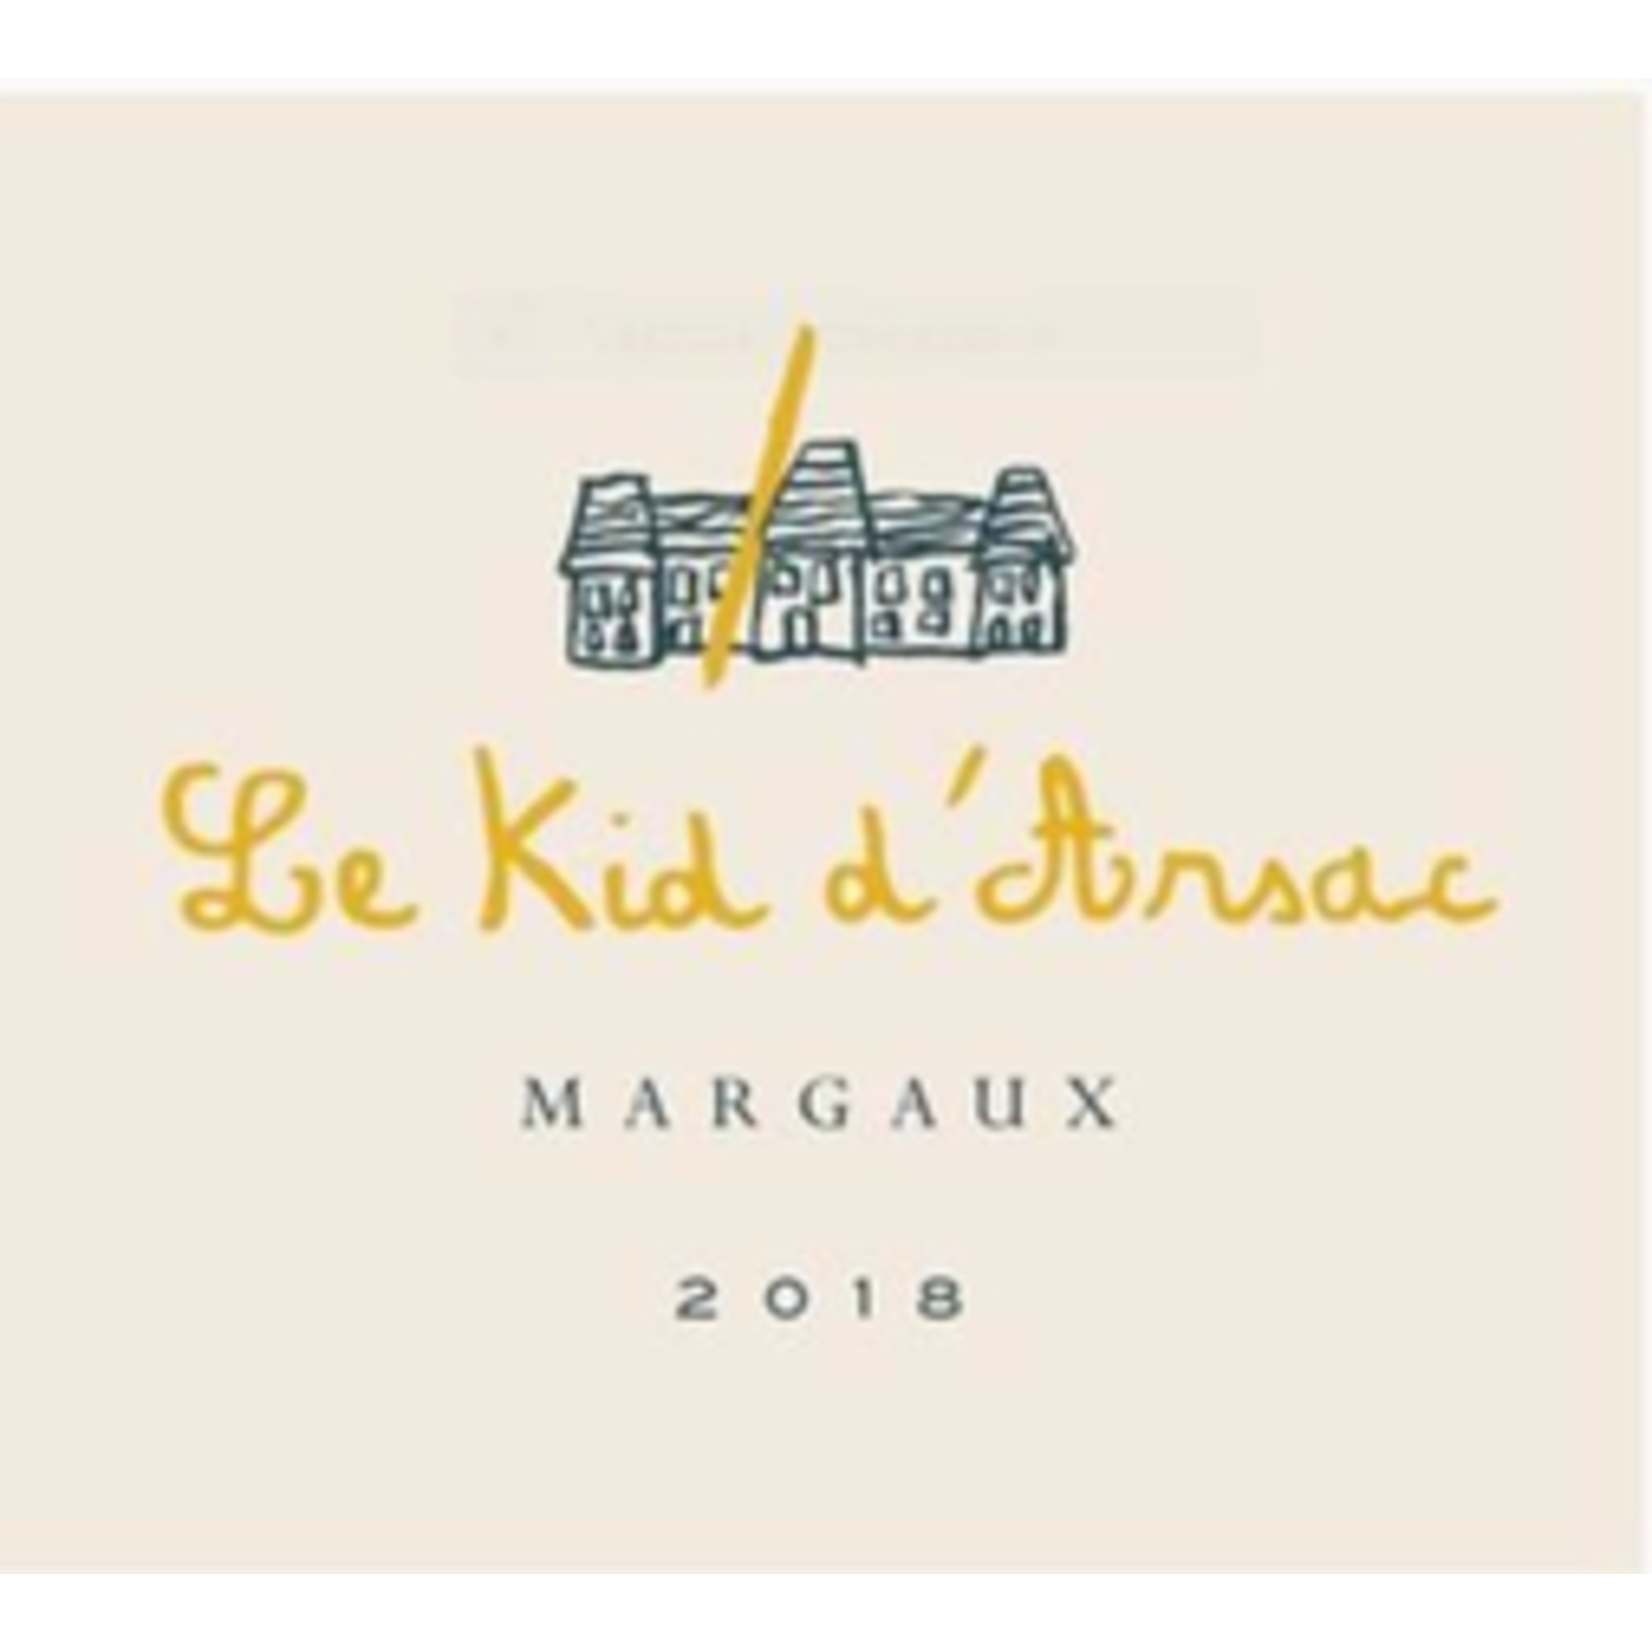 Wine Le Kid d'Arsac  2018